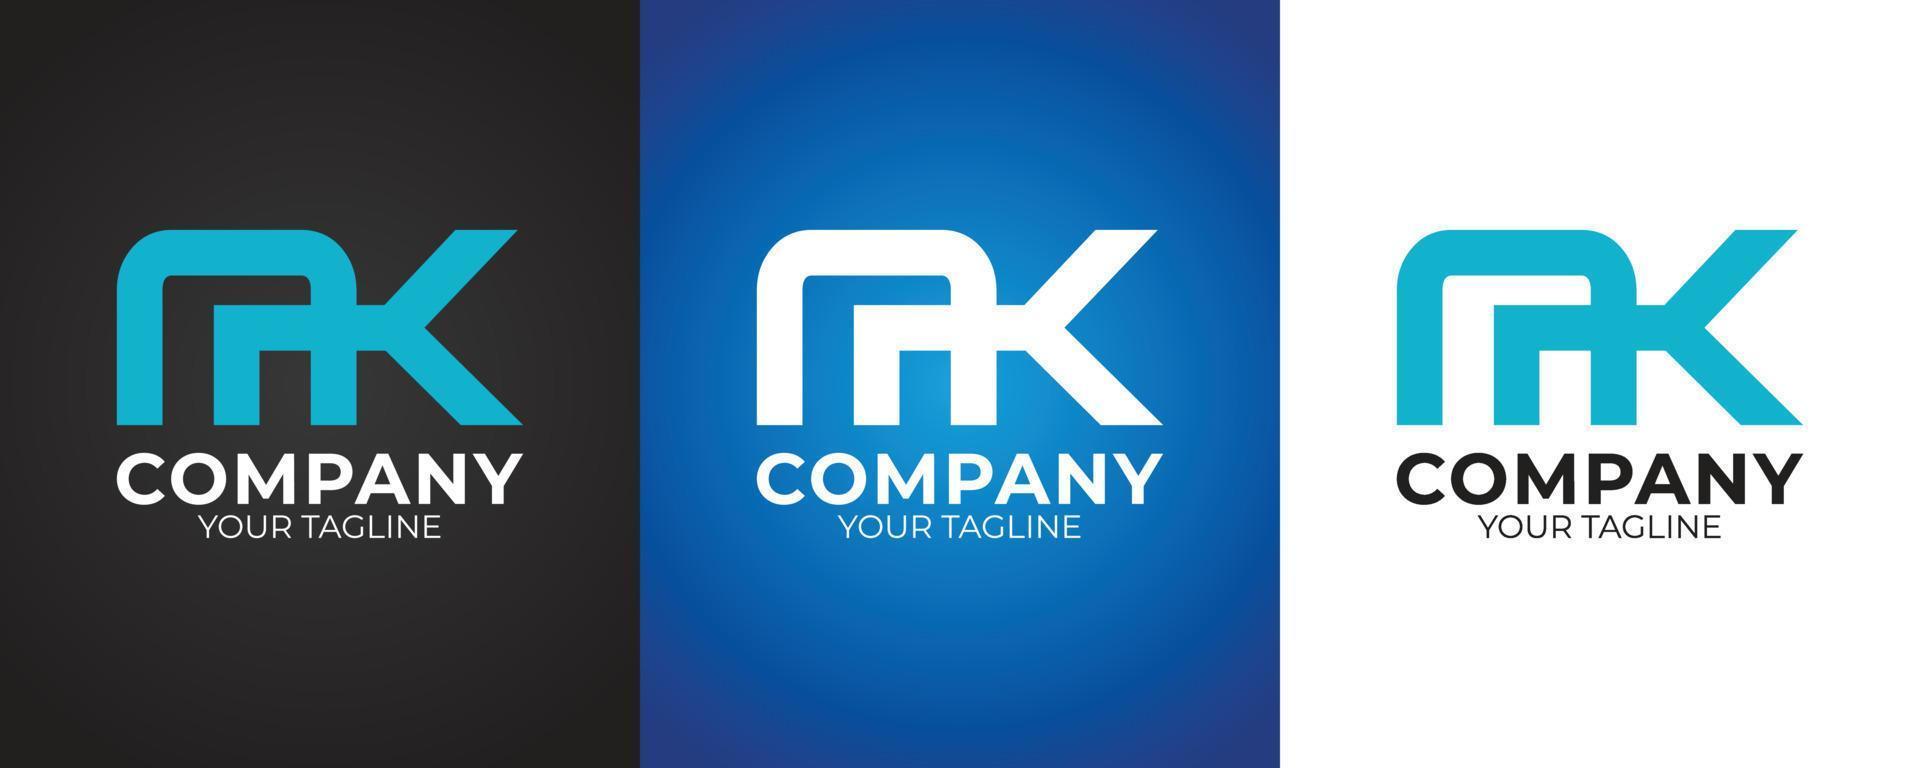 mk Brief sauber modern und minimalistisch Logo Marke Identität Design zum Geschäft vektor